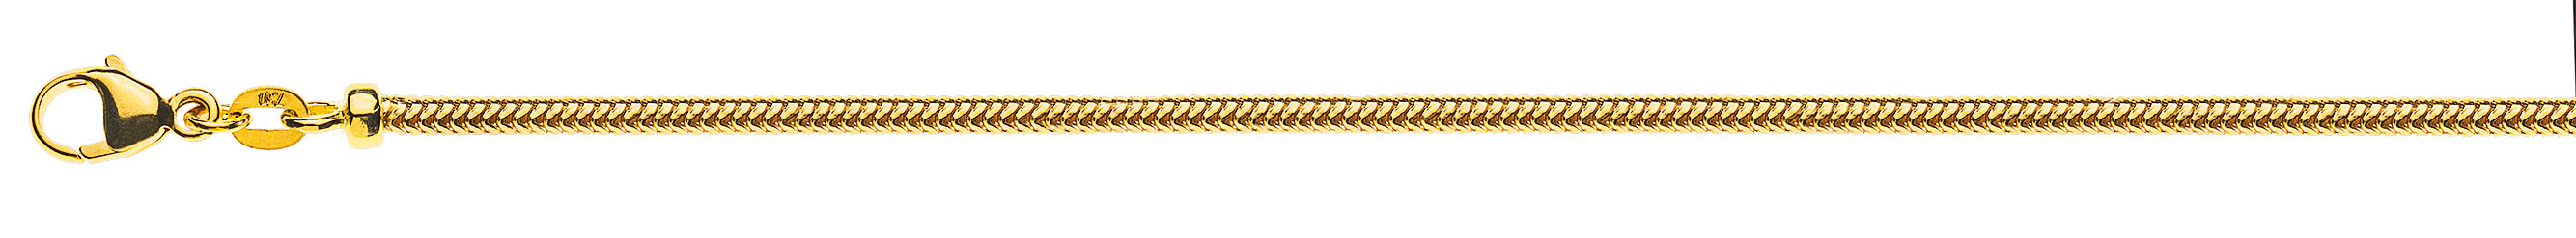 AURONOS Prestige Halskette Gelbgold 18K Schlangenkette 40cm 2.4mm